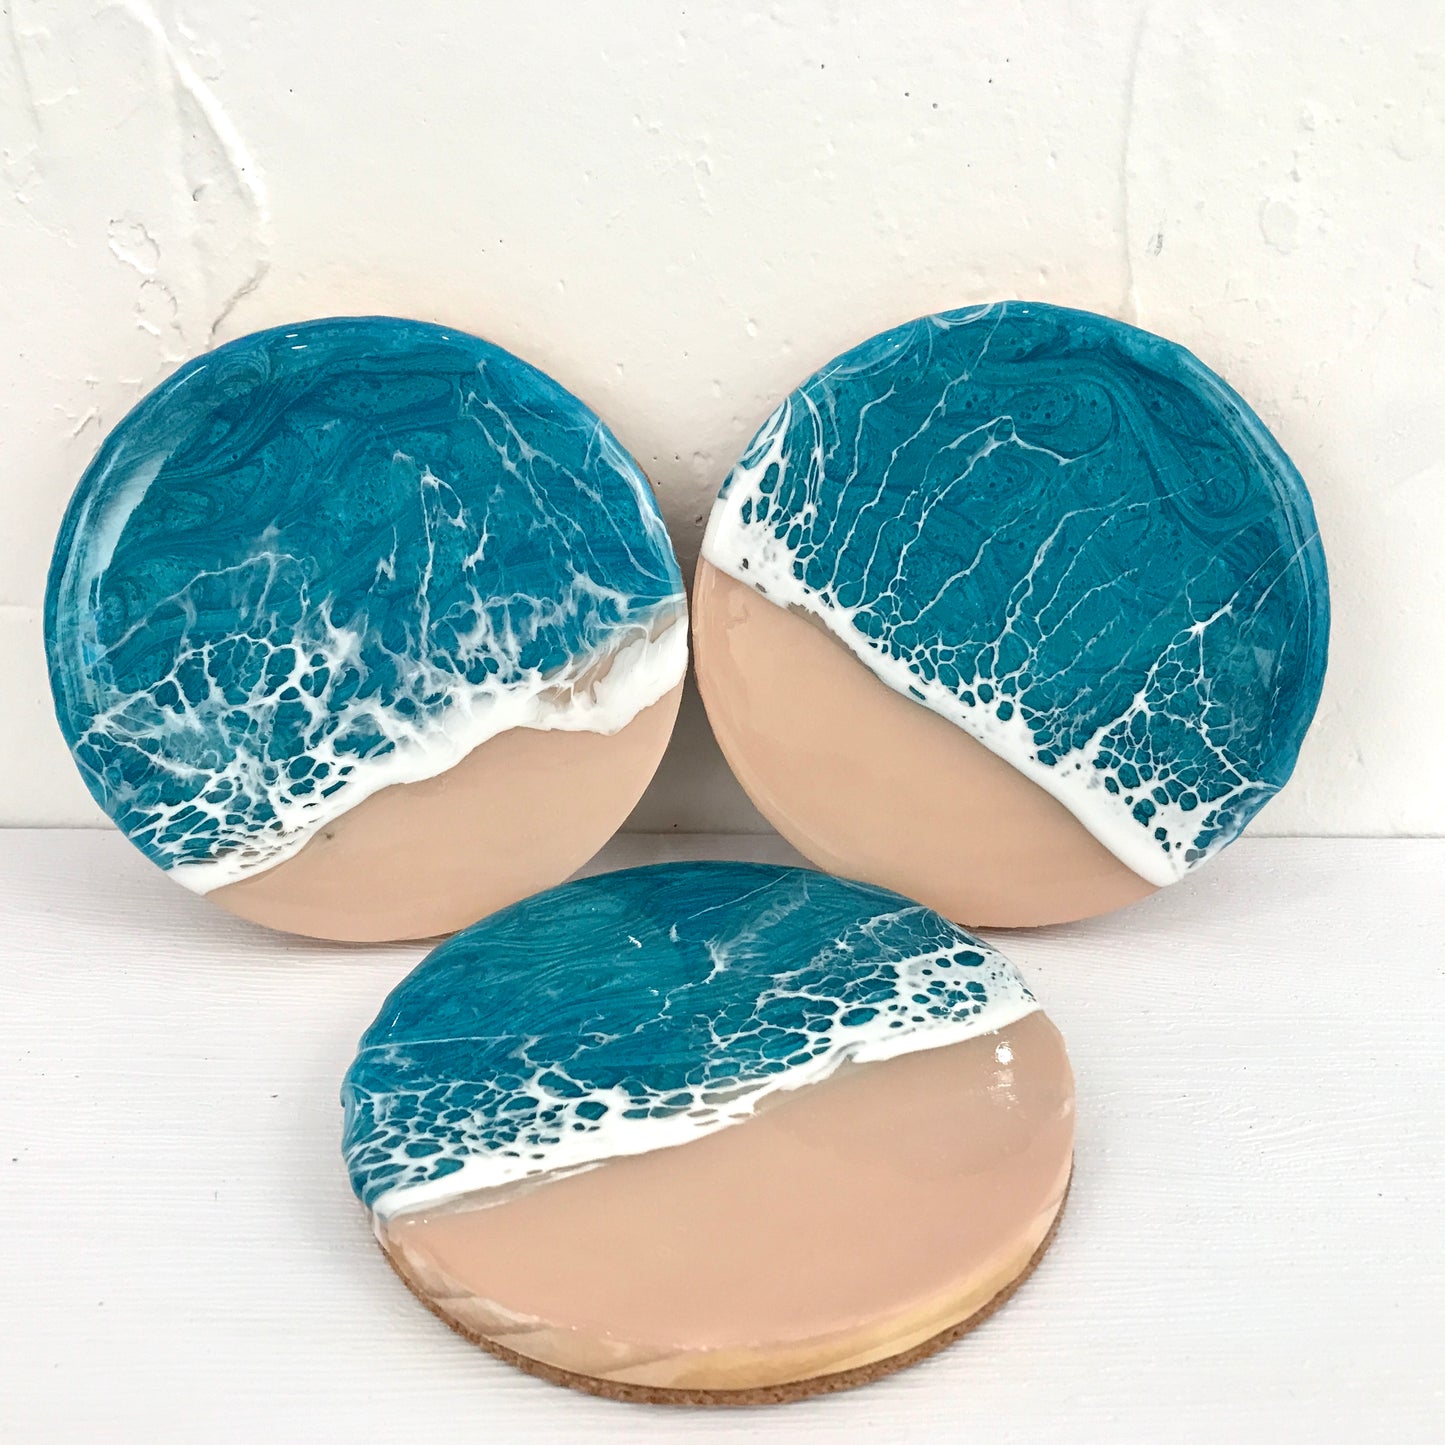 Resin Ocean Coasters 樹脂海洋杯墊